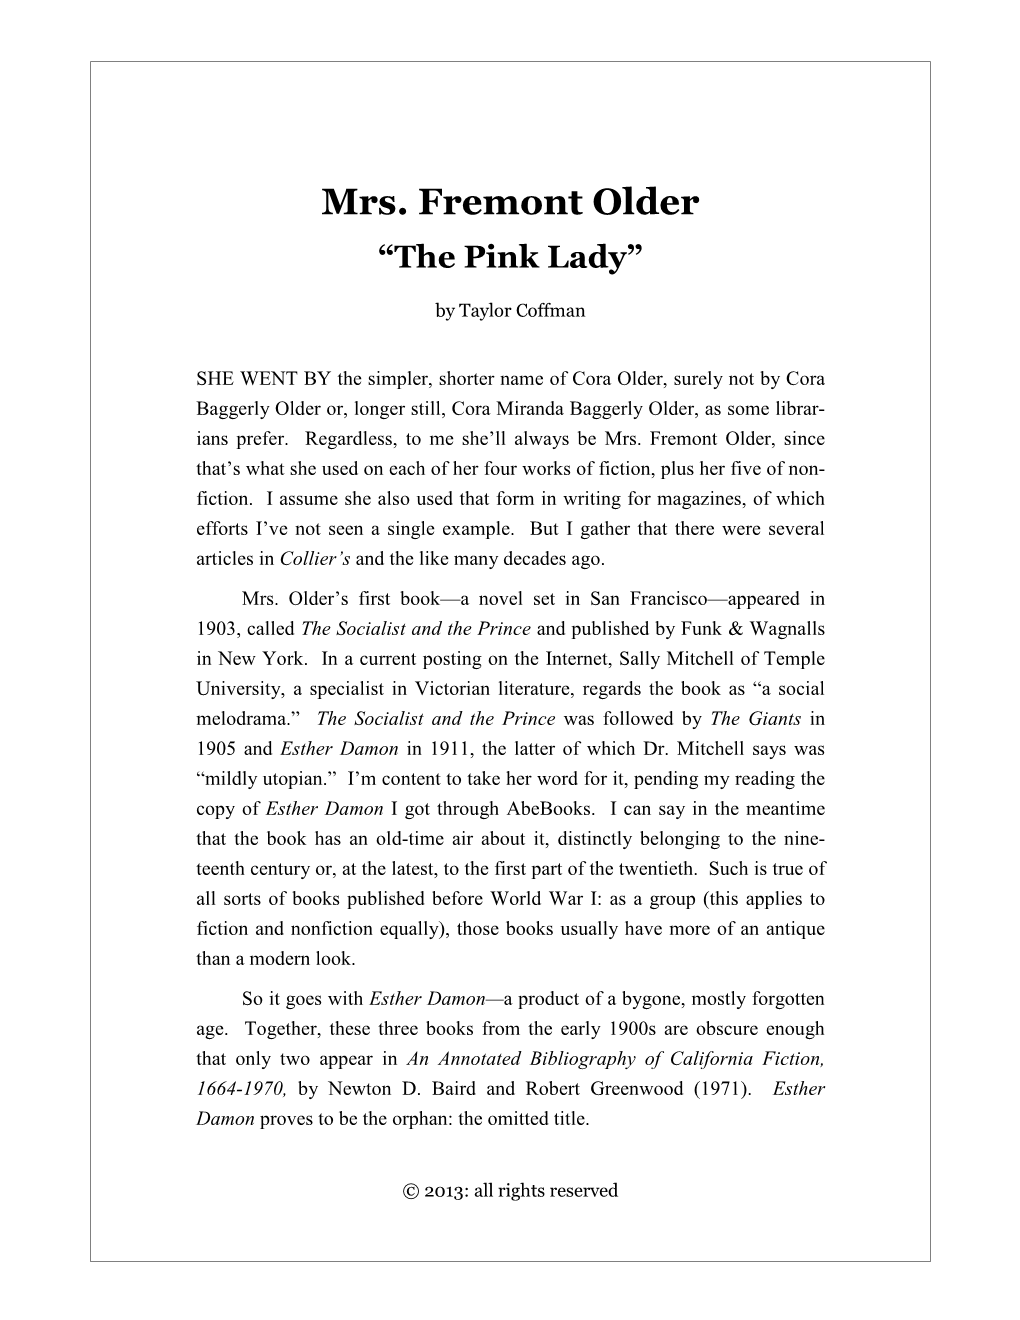 Mrs. Fremont Older: "The Pink Lady"